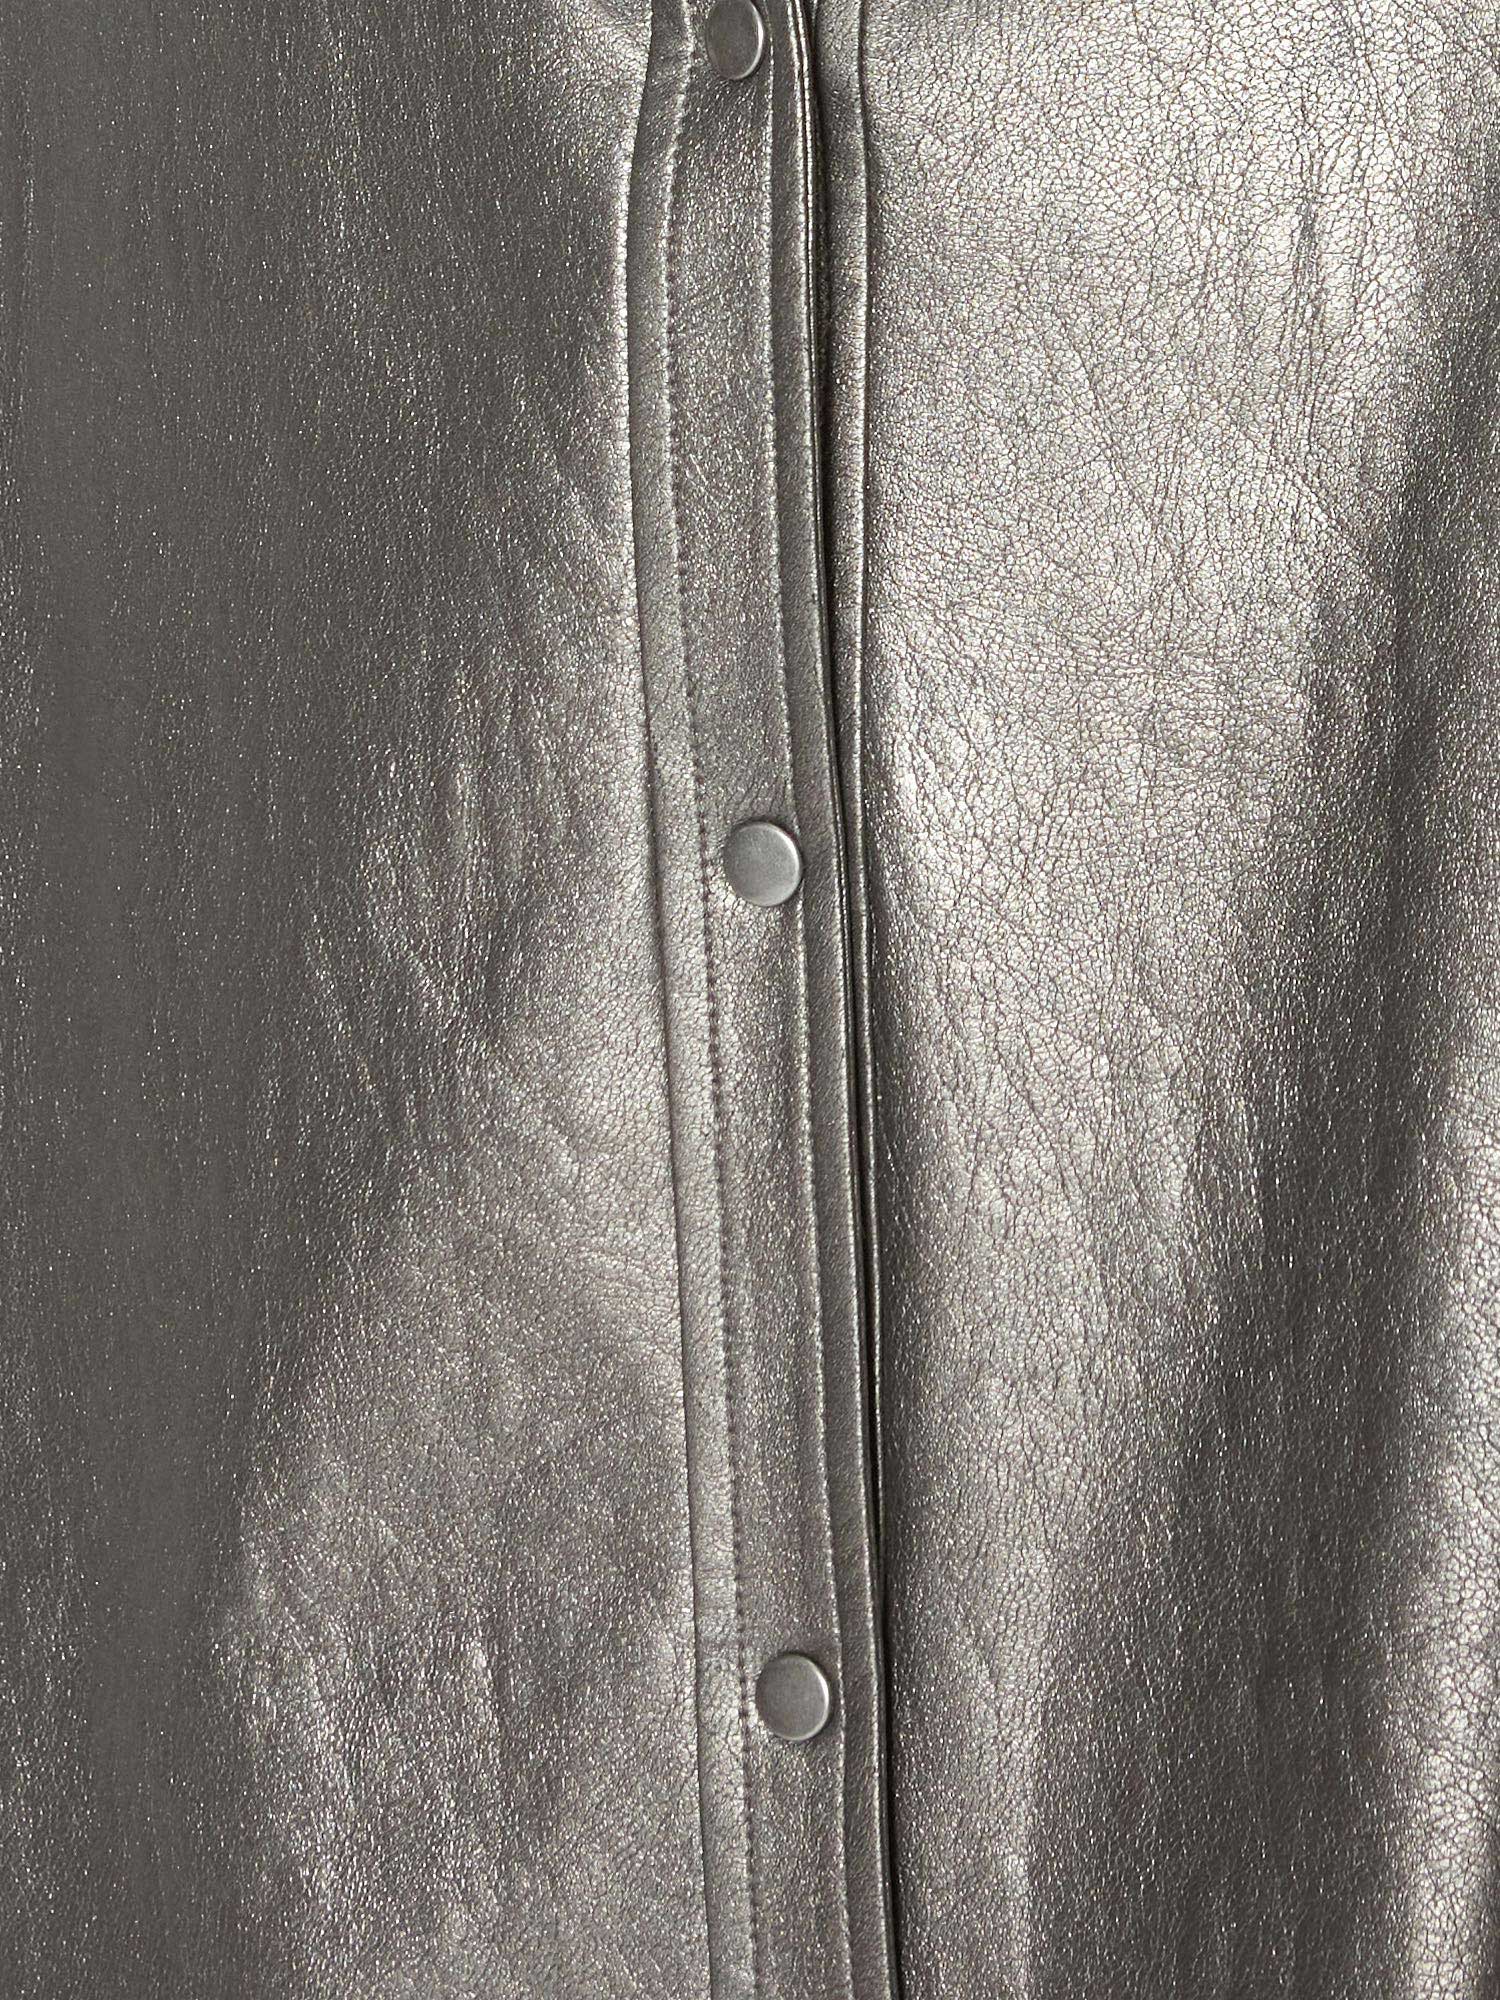 Layra shiny metallic grey vegan leather buttondown shirt close up 2